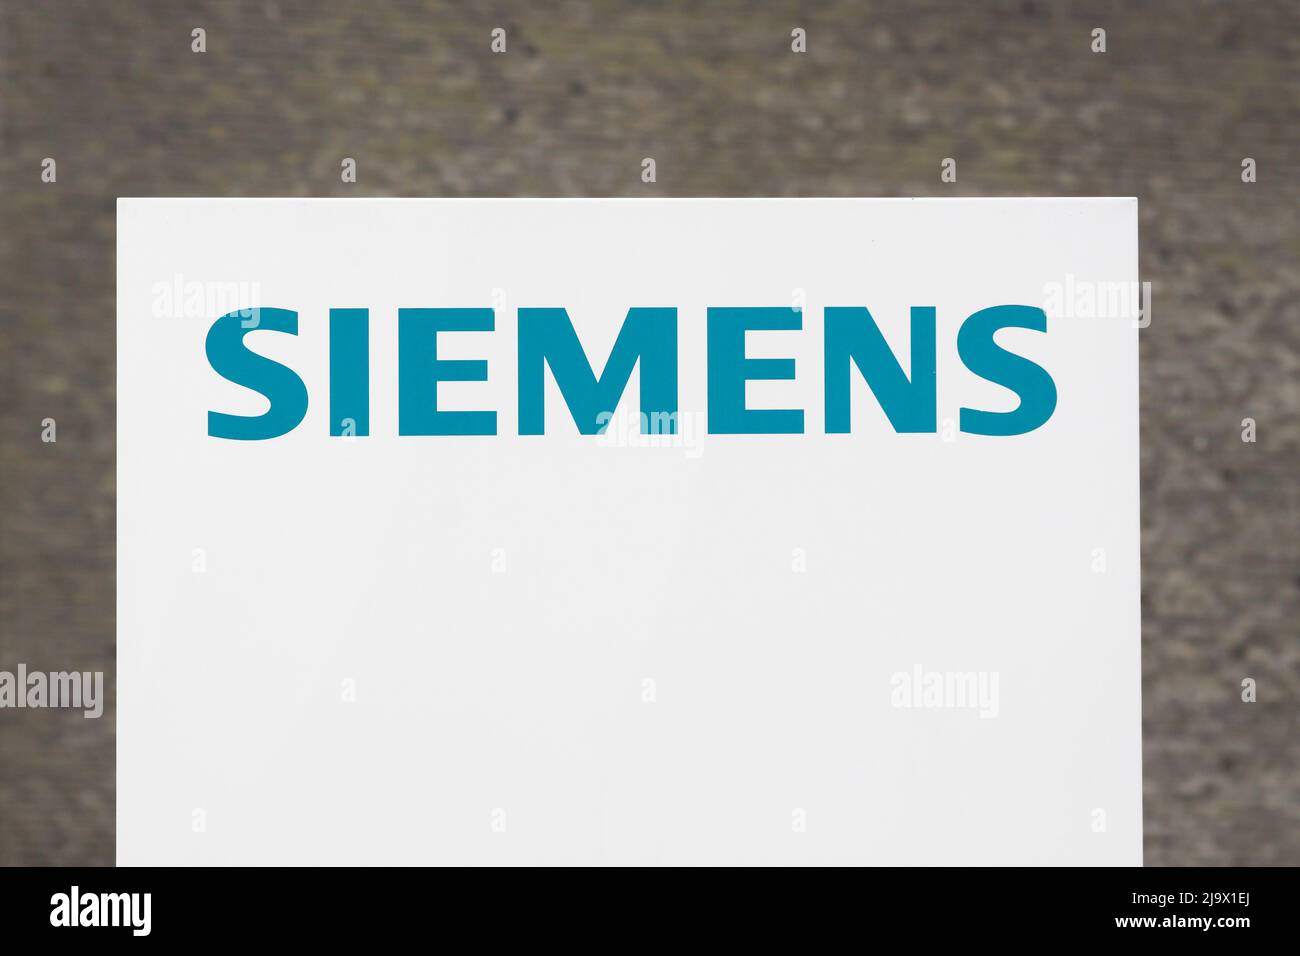 Tilst, Danemark - 21 juin 2015:Siemens est une multinationale allemande. Les principales divisions de l'entreprise sont l'industrie, l'énergie, la santé Banque D'Images